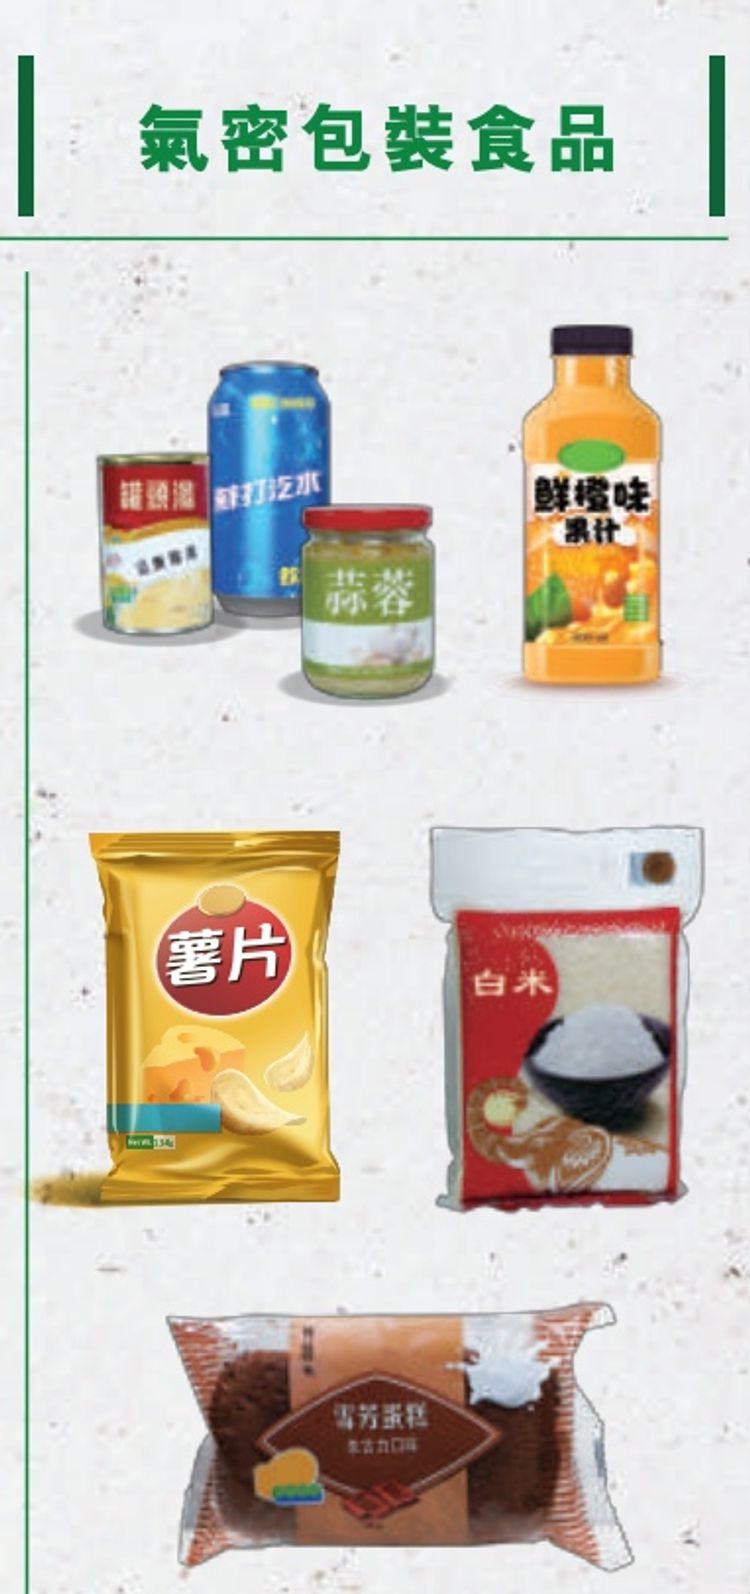 膠袋徵費懶人包, 12月31日徵費加至1元, 冷凍食品不再豁免, 僅3種情況例外, HKBT, 香港財經時報